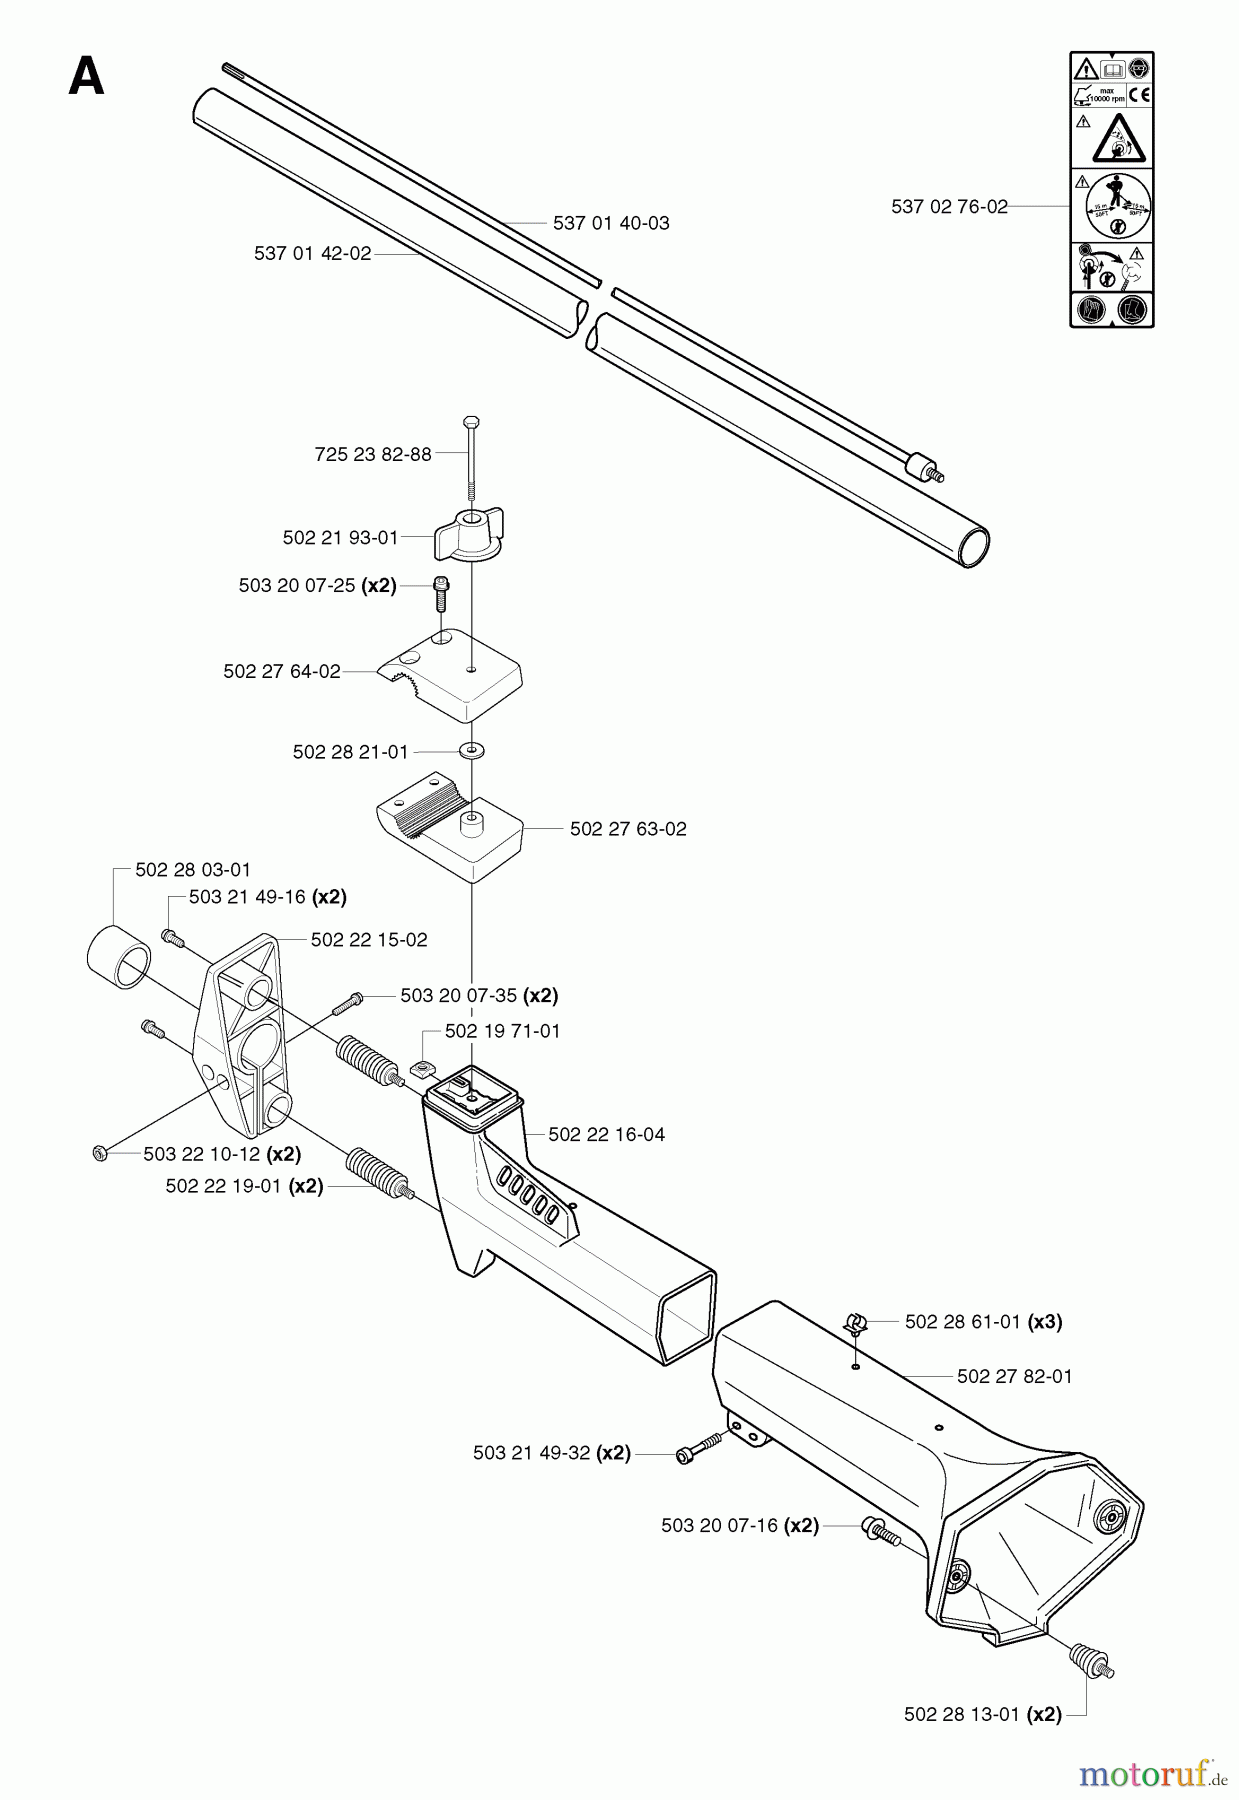  Jonsered Motorsensen, Trimmer RS52 EPA - Jonsered String/Brush Trimmer (2002-08) SHAFT